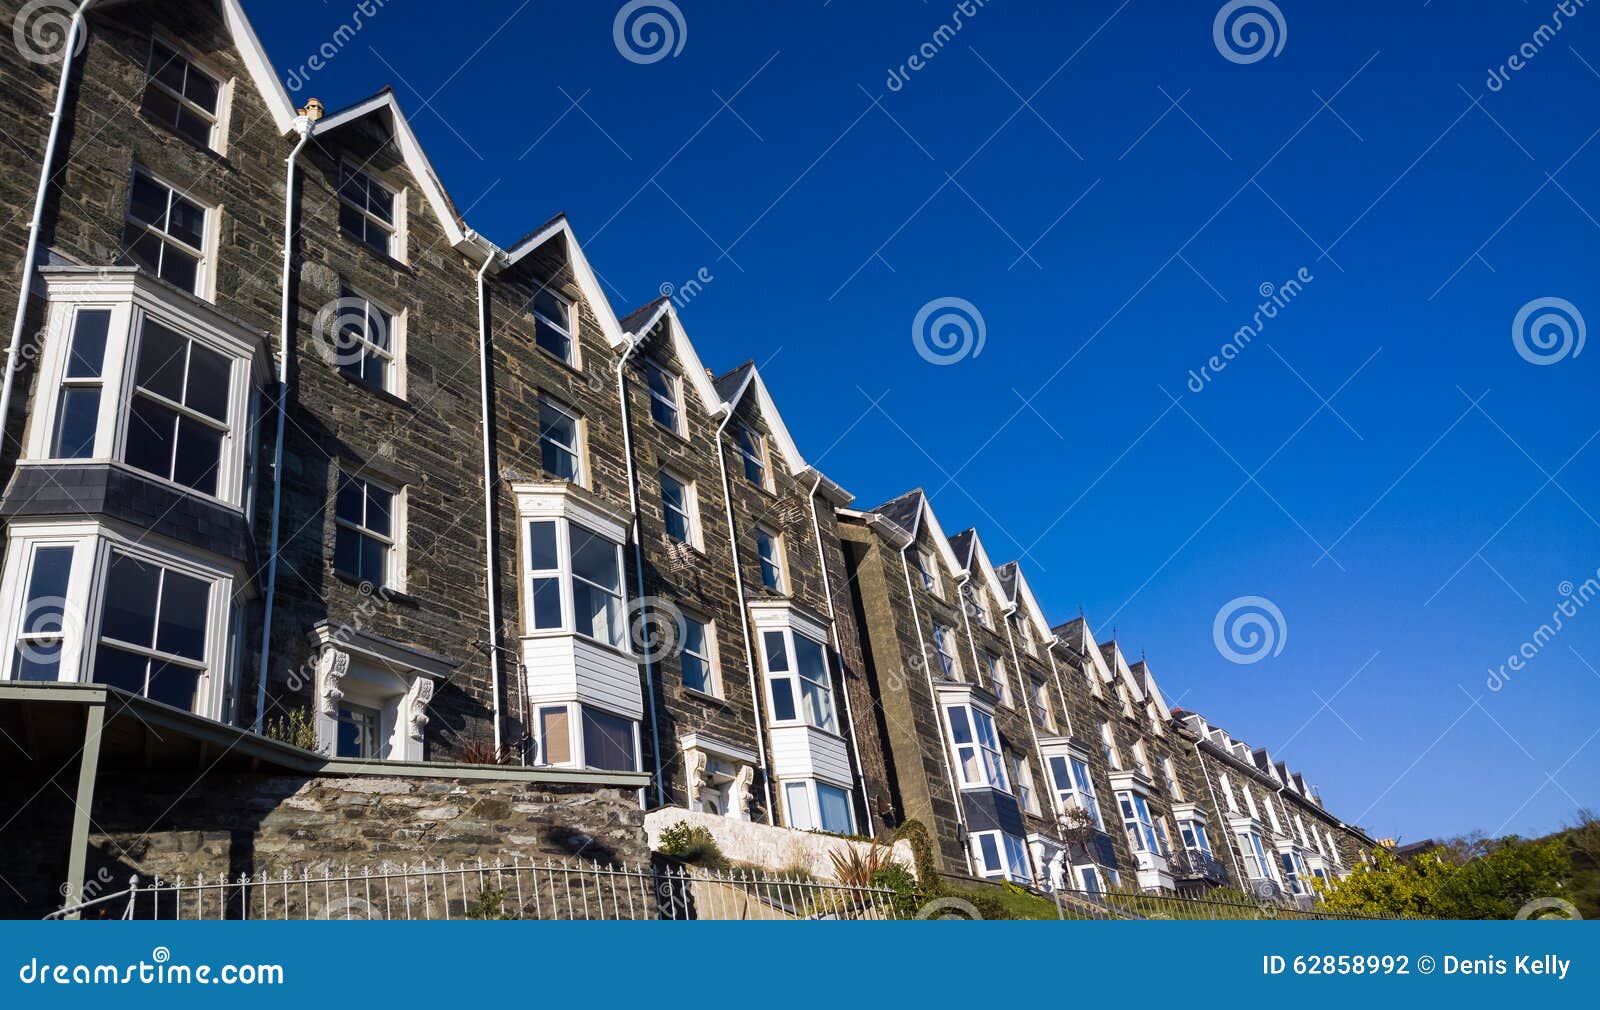 terraced housing in wales uk